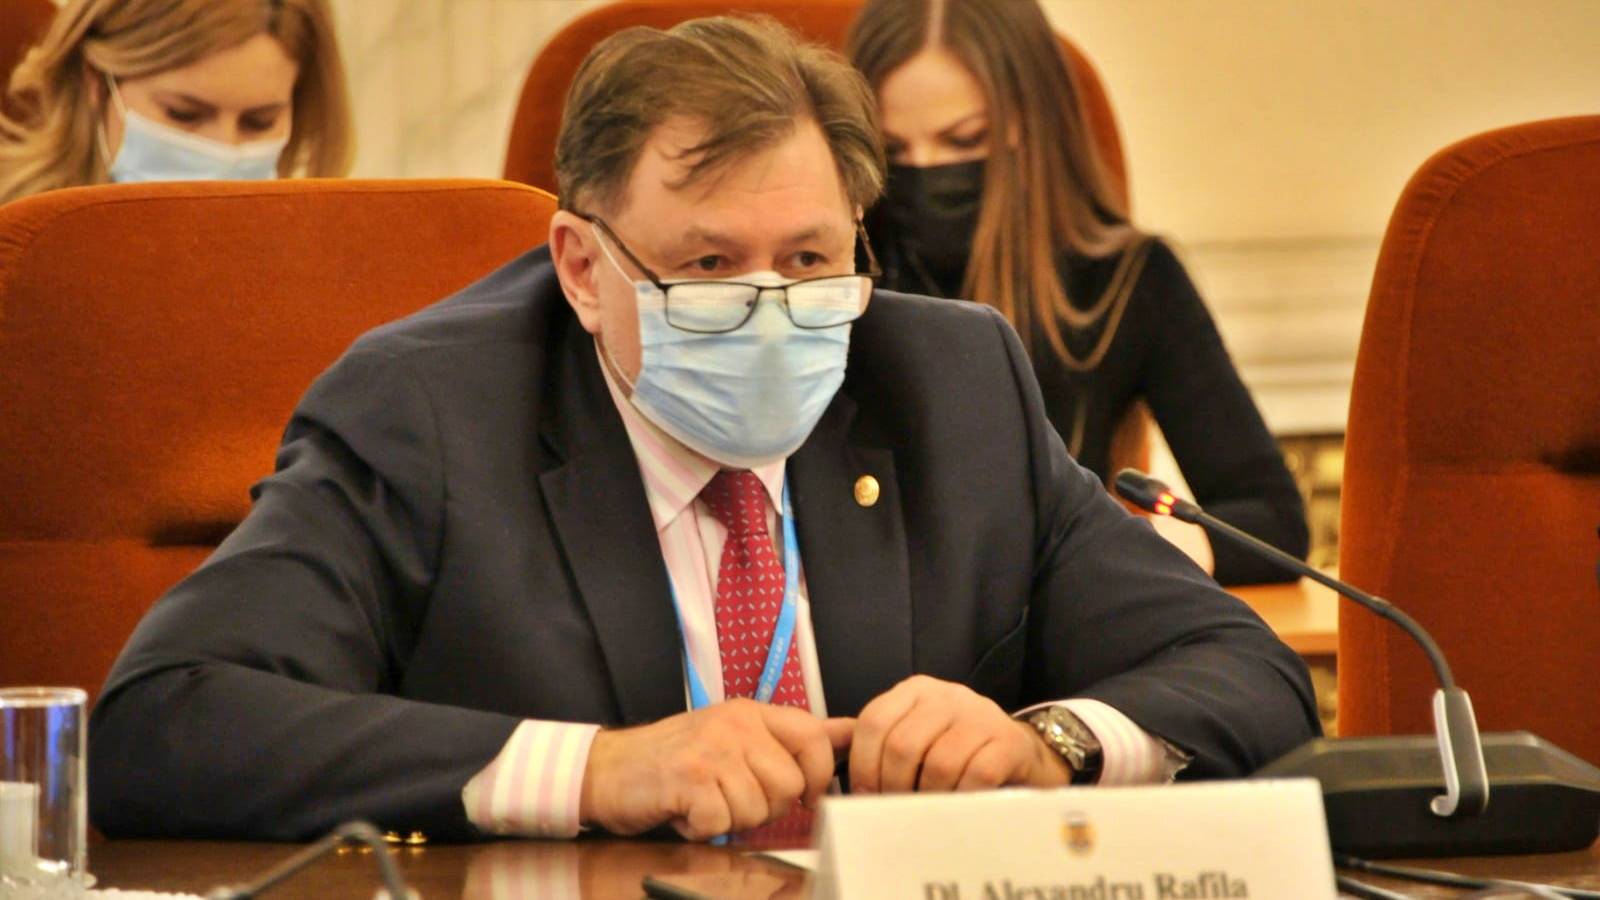 Der neue offizielle Beschluss des Gesundheitsministers wurde zuletzt allen Rumänen bekannt gegeben